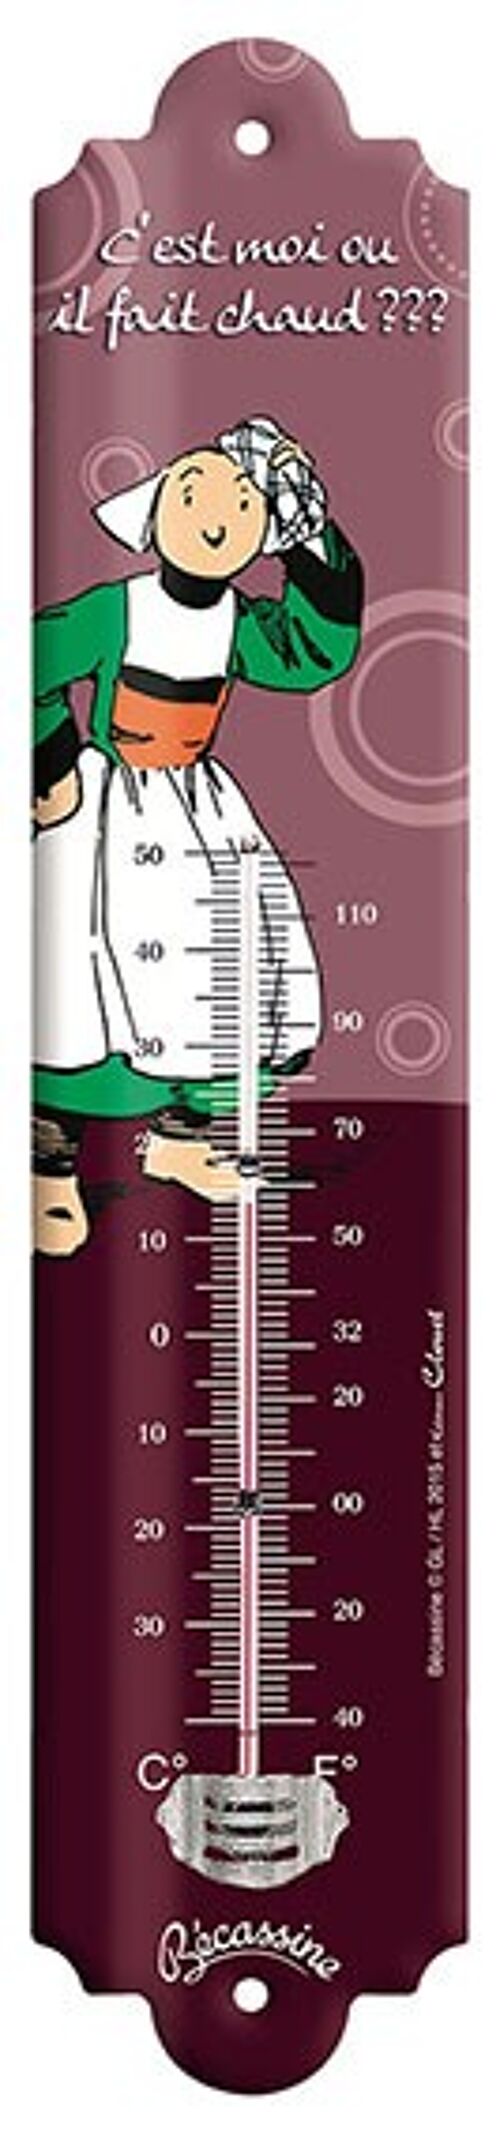 Thermomètre Vintage Becassine c'est moi ou il fait chaud thermometre